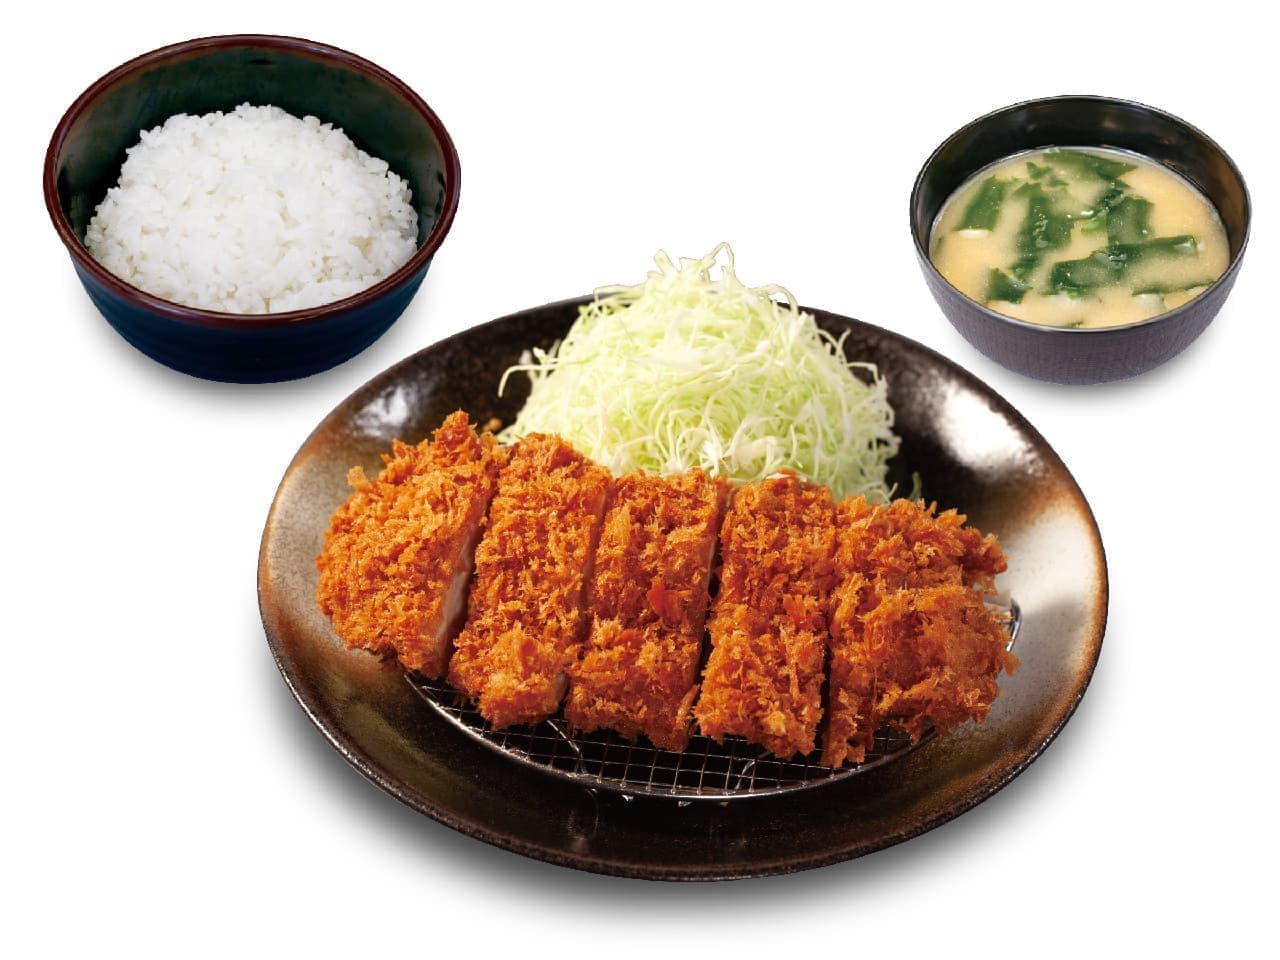 Matsunoya "Chicken Katsu